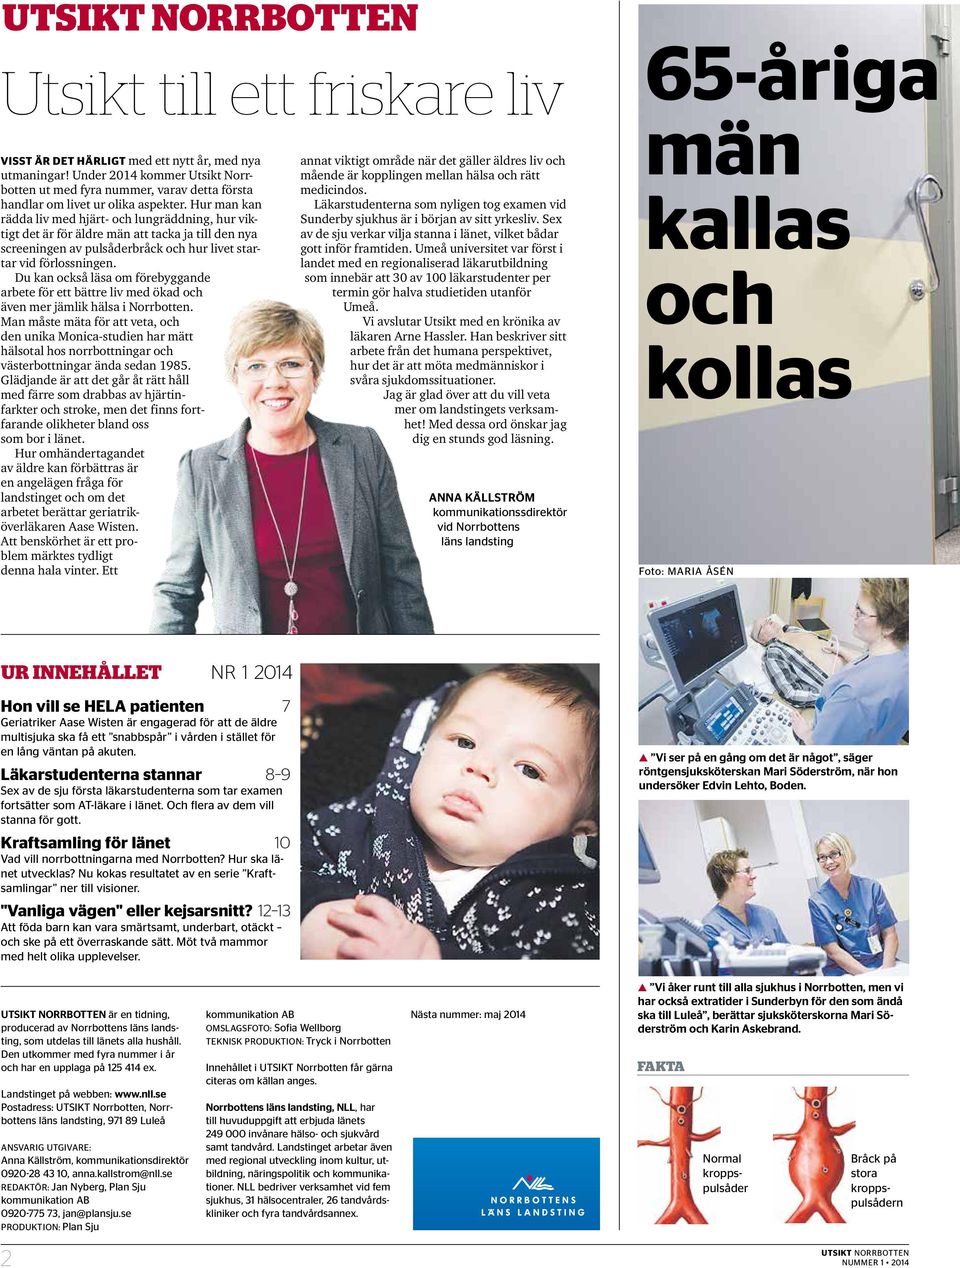 Du kan också läsa om förebyggande arbete för ett bättre liv med ökad och även mer jämlik hälsa i Norrbotten.